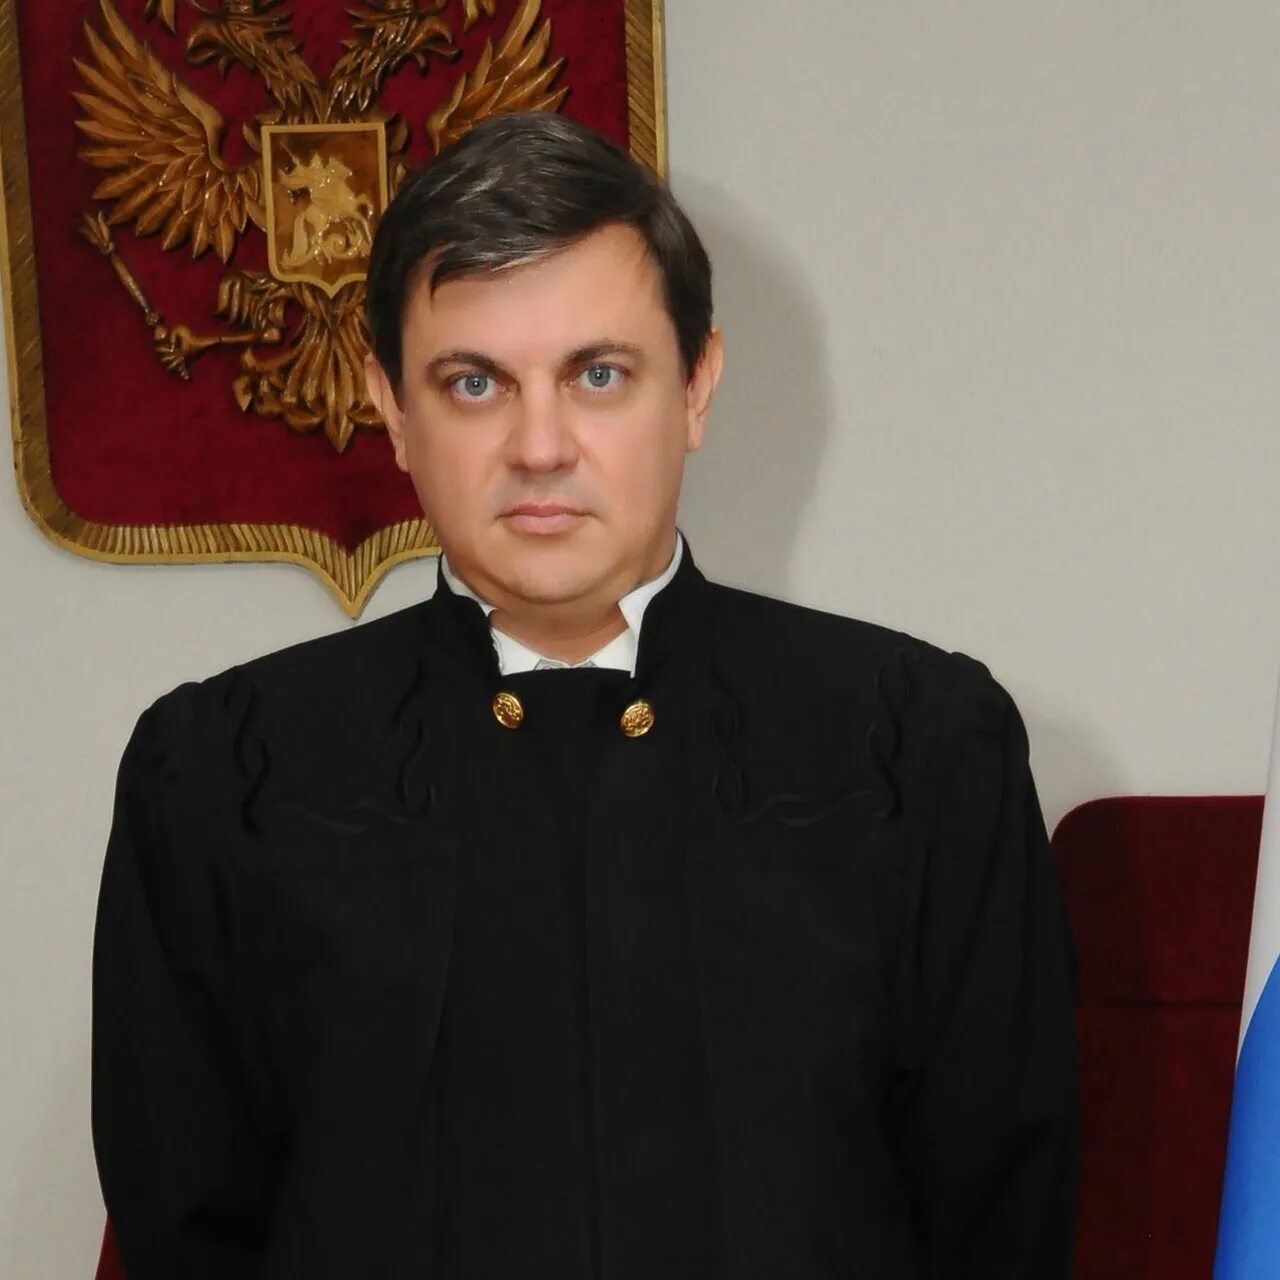 Сайт солнцевского районного суда г. Судья Хмелевской Курск. Председатель арбитражного суда Захаров.